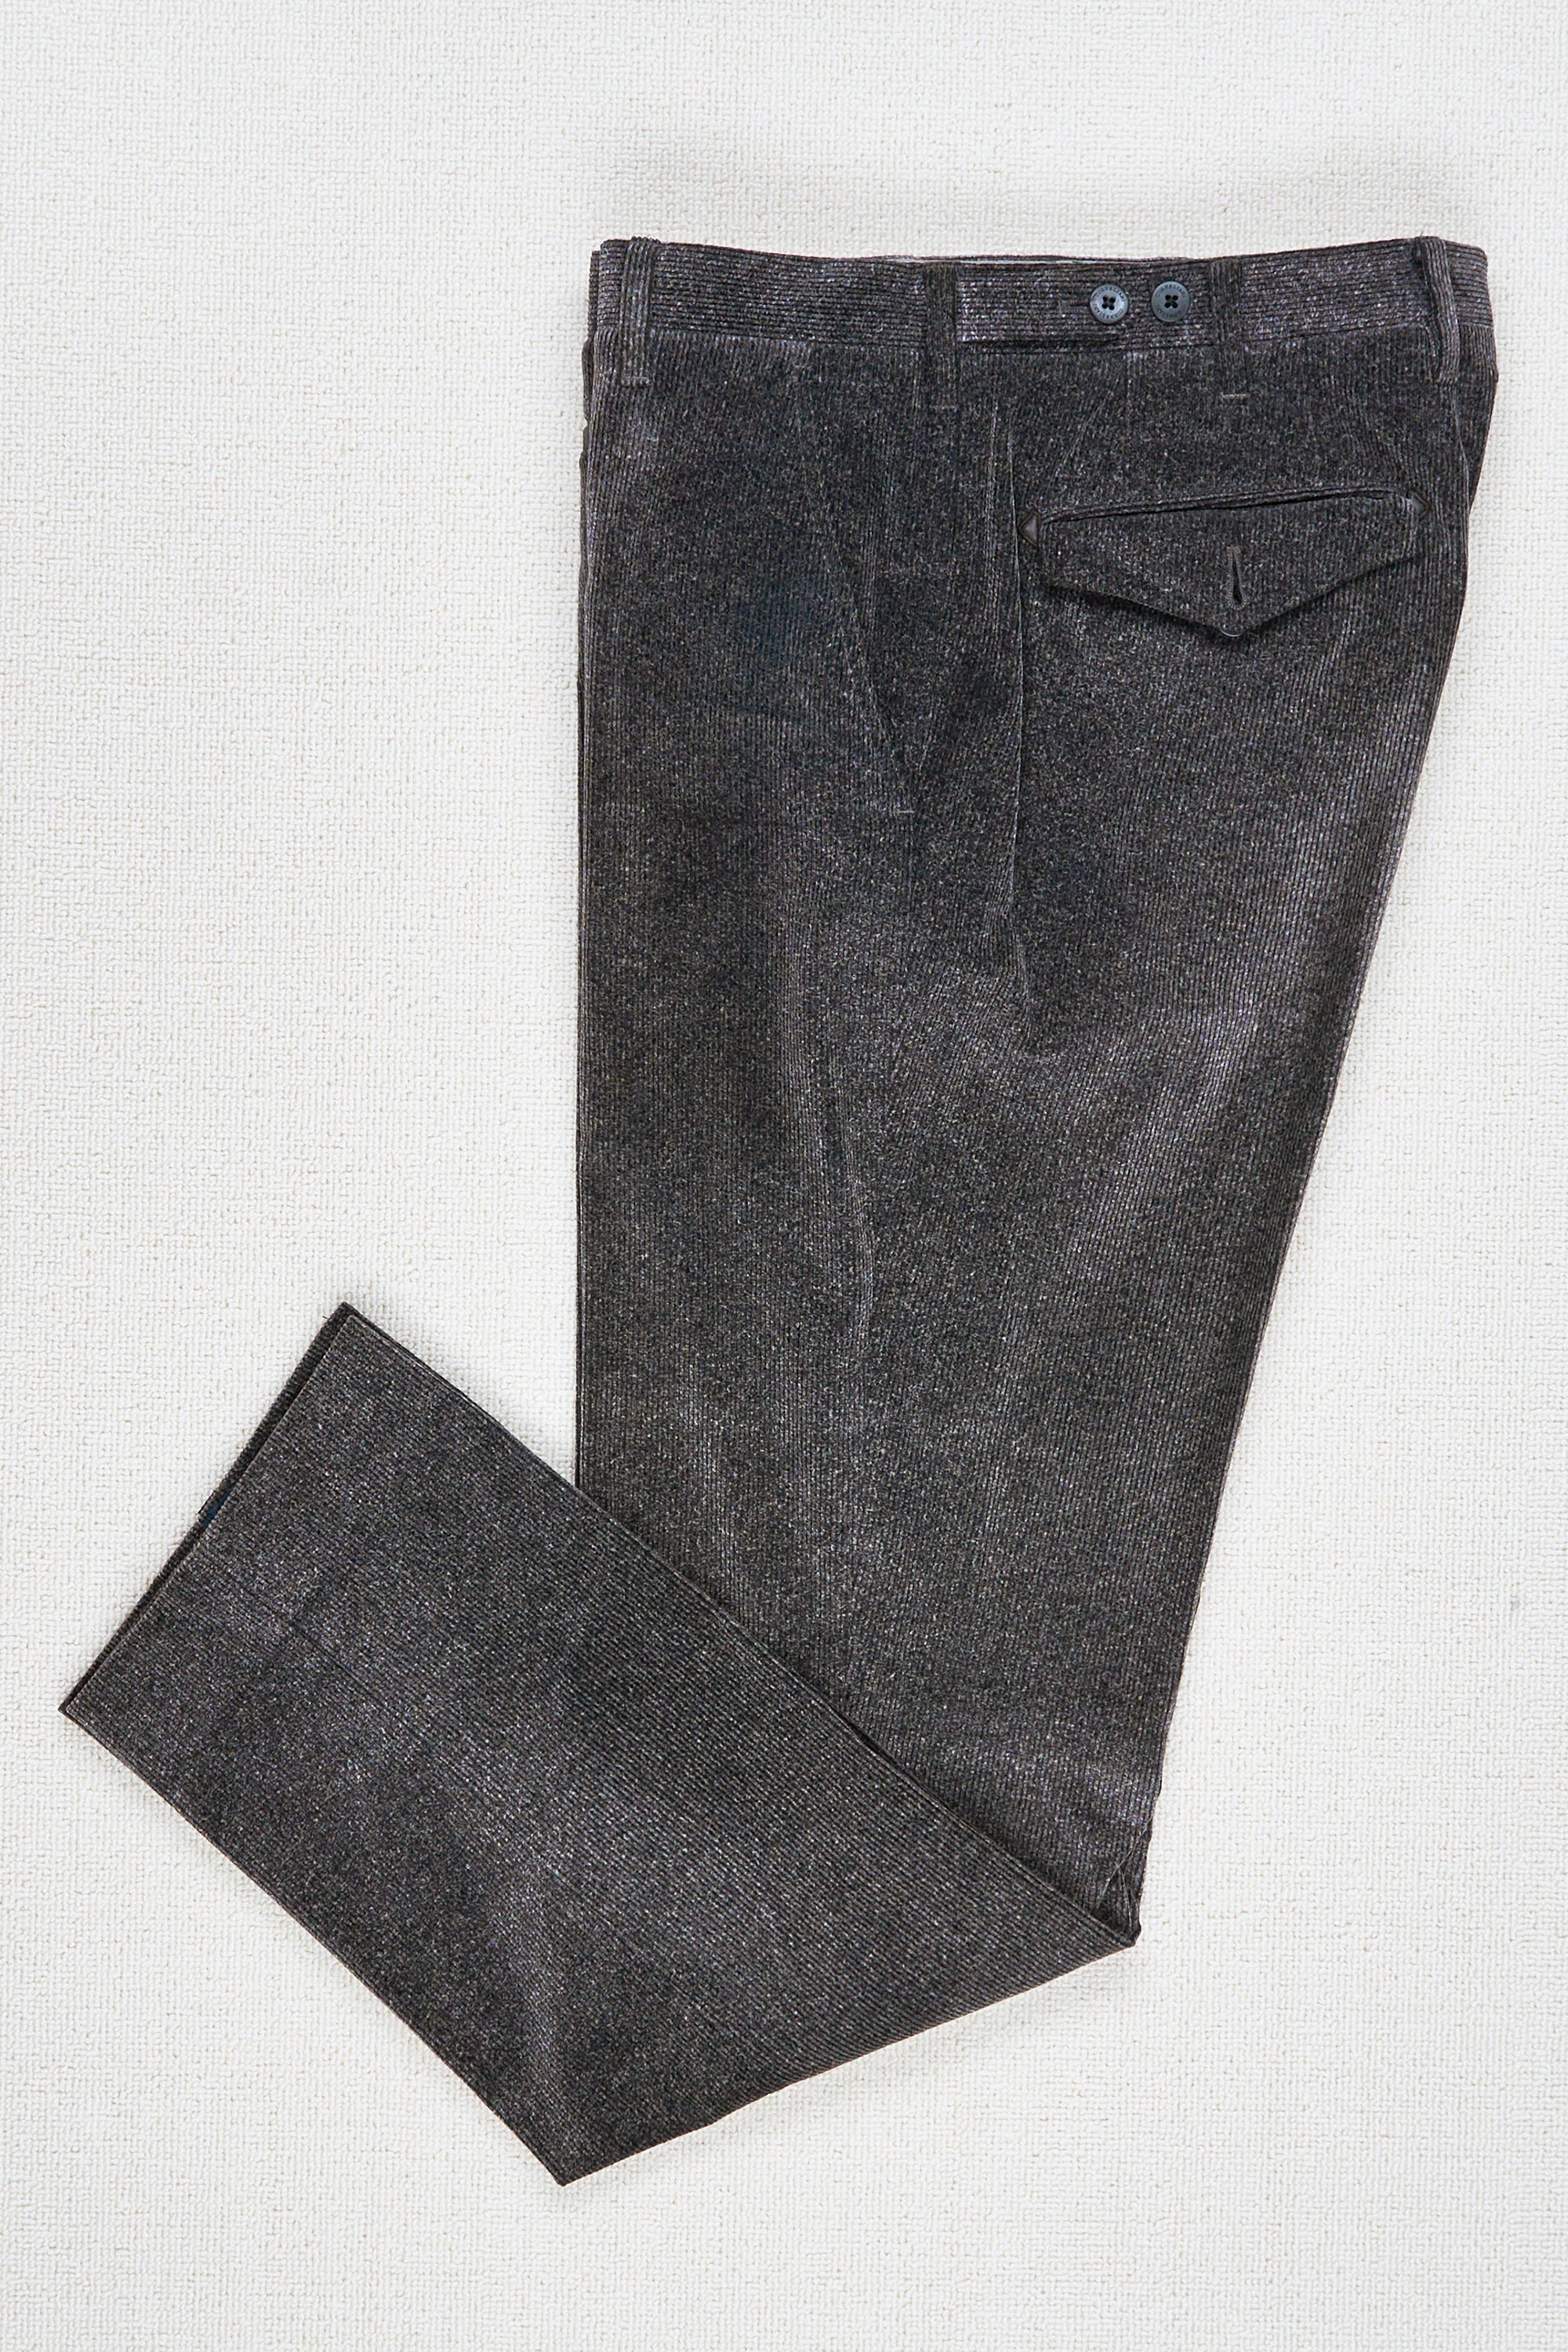 Corneliani Grey Corduroy Trousers